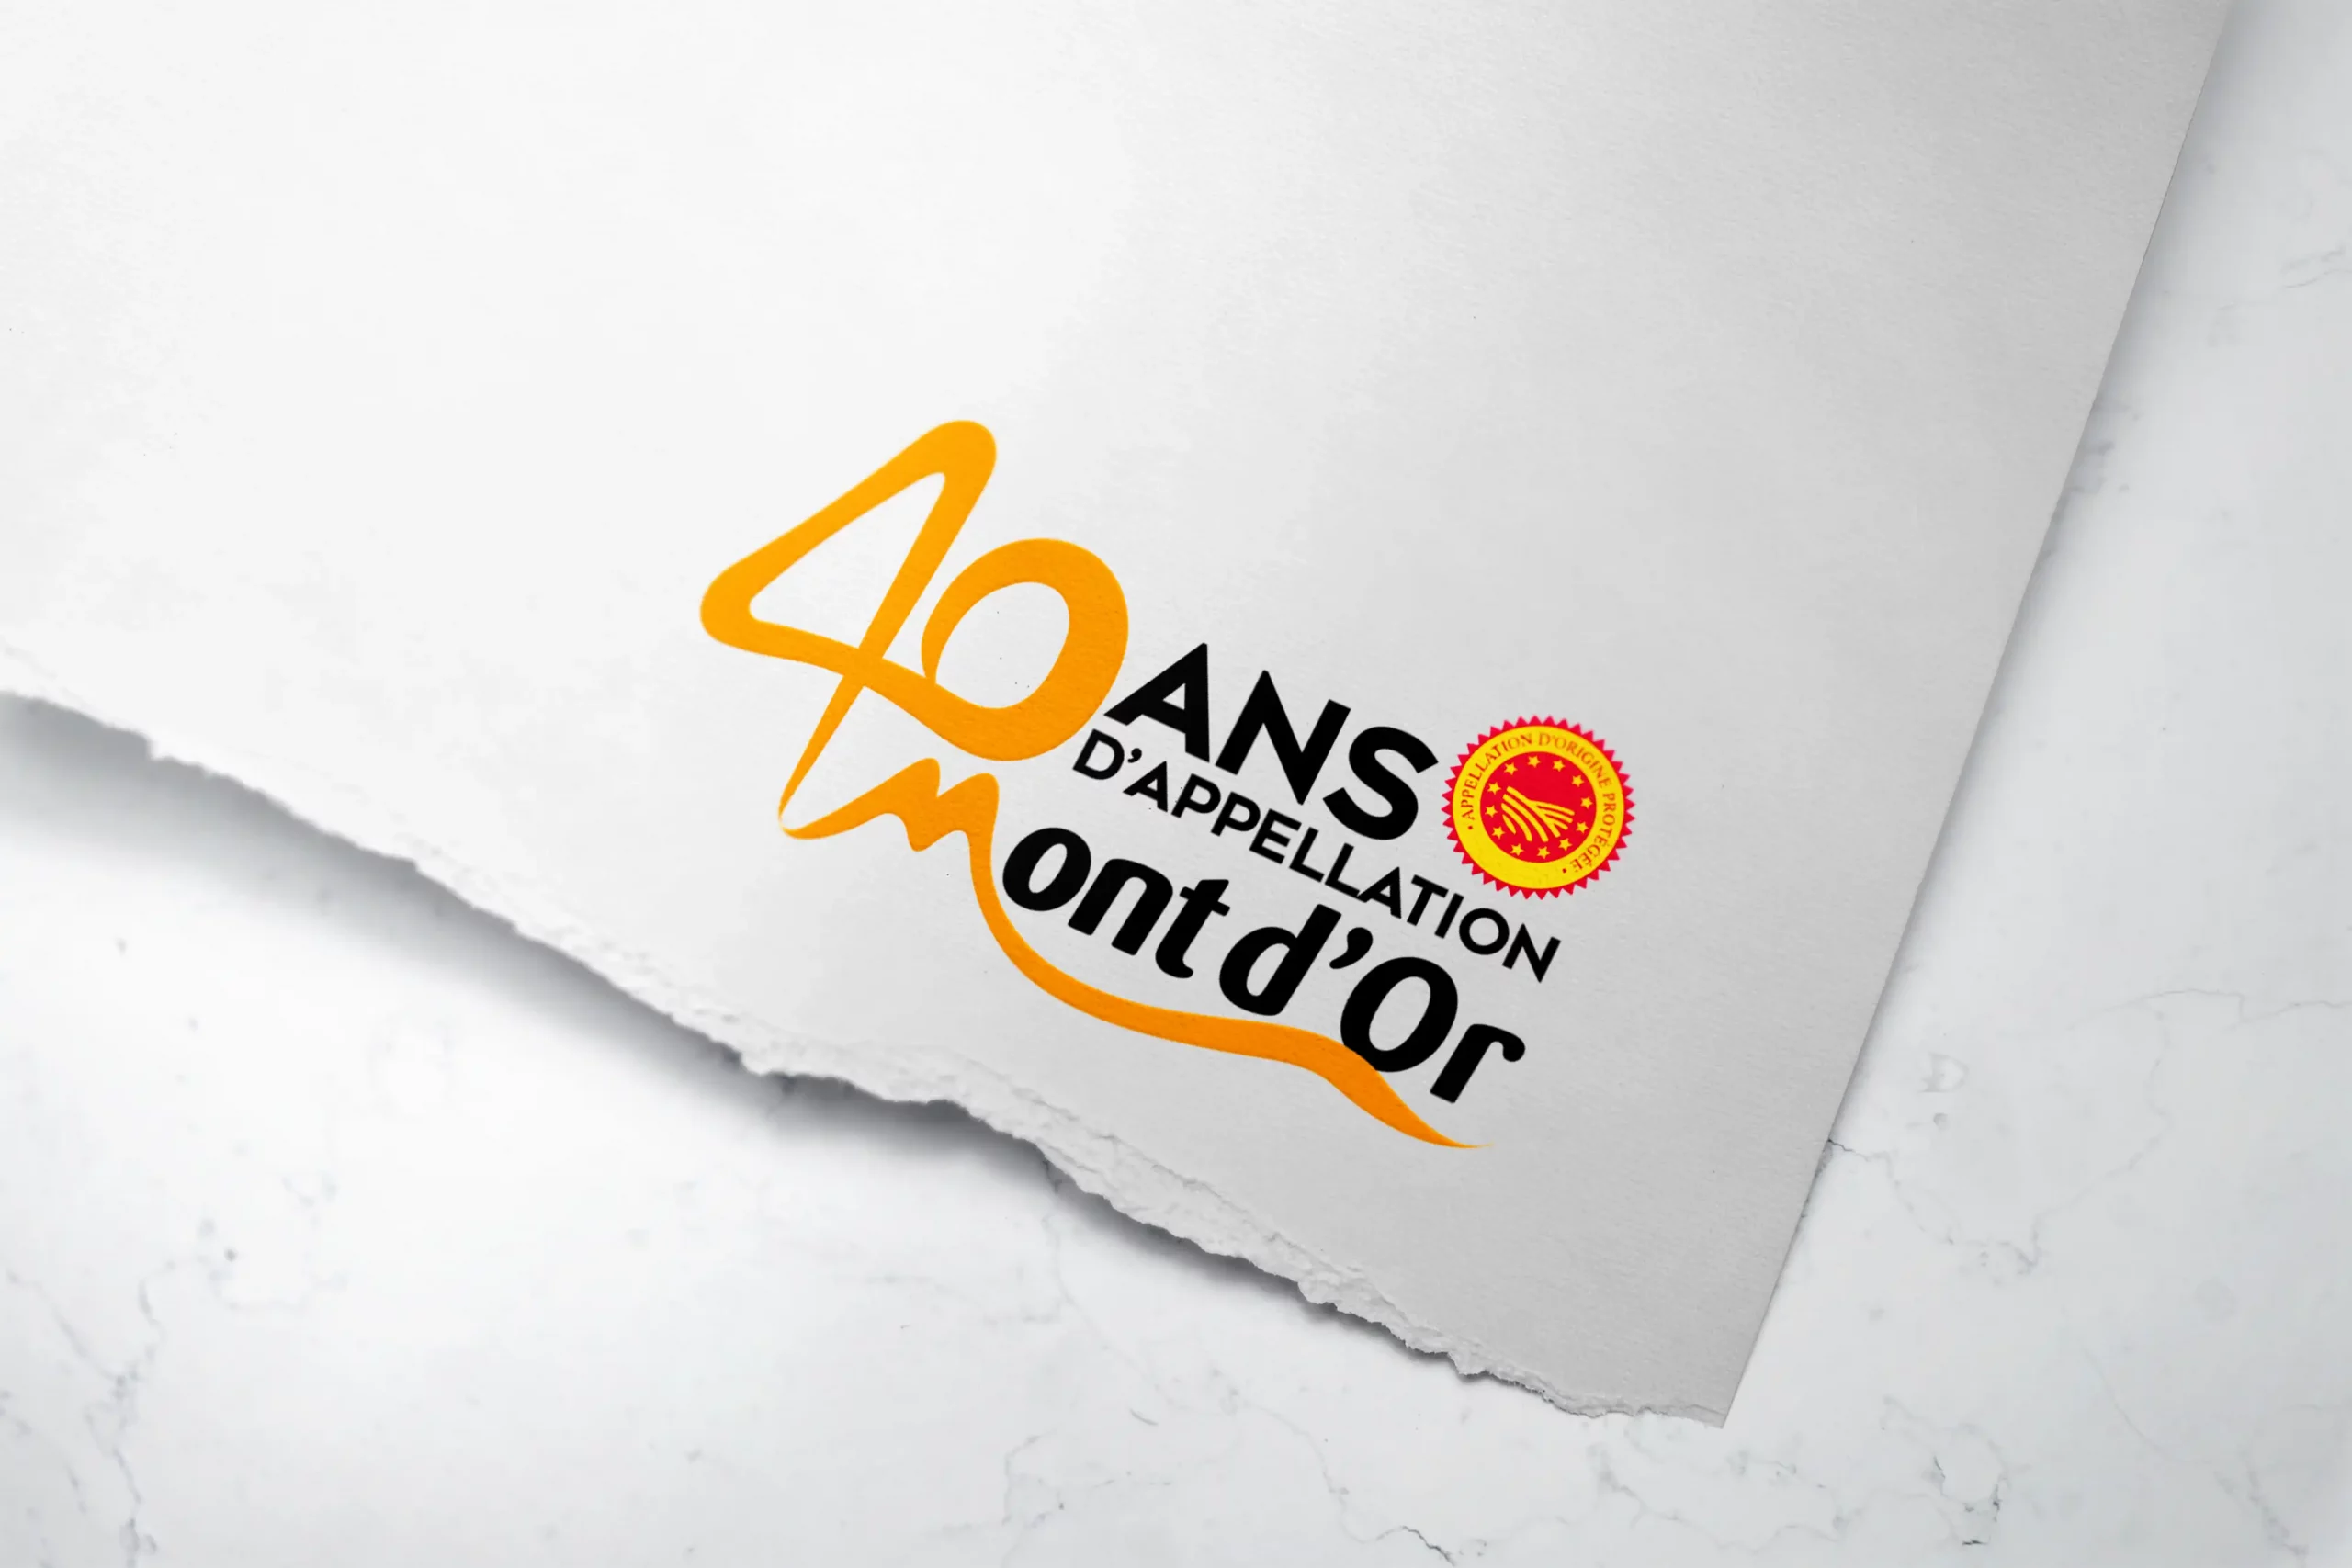 Logo spécial 40 ans d'appellation d'origine protégée pour le Mont d'Or